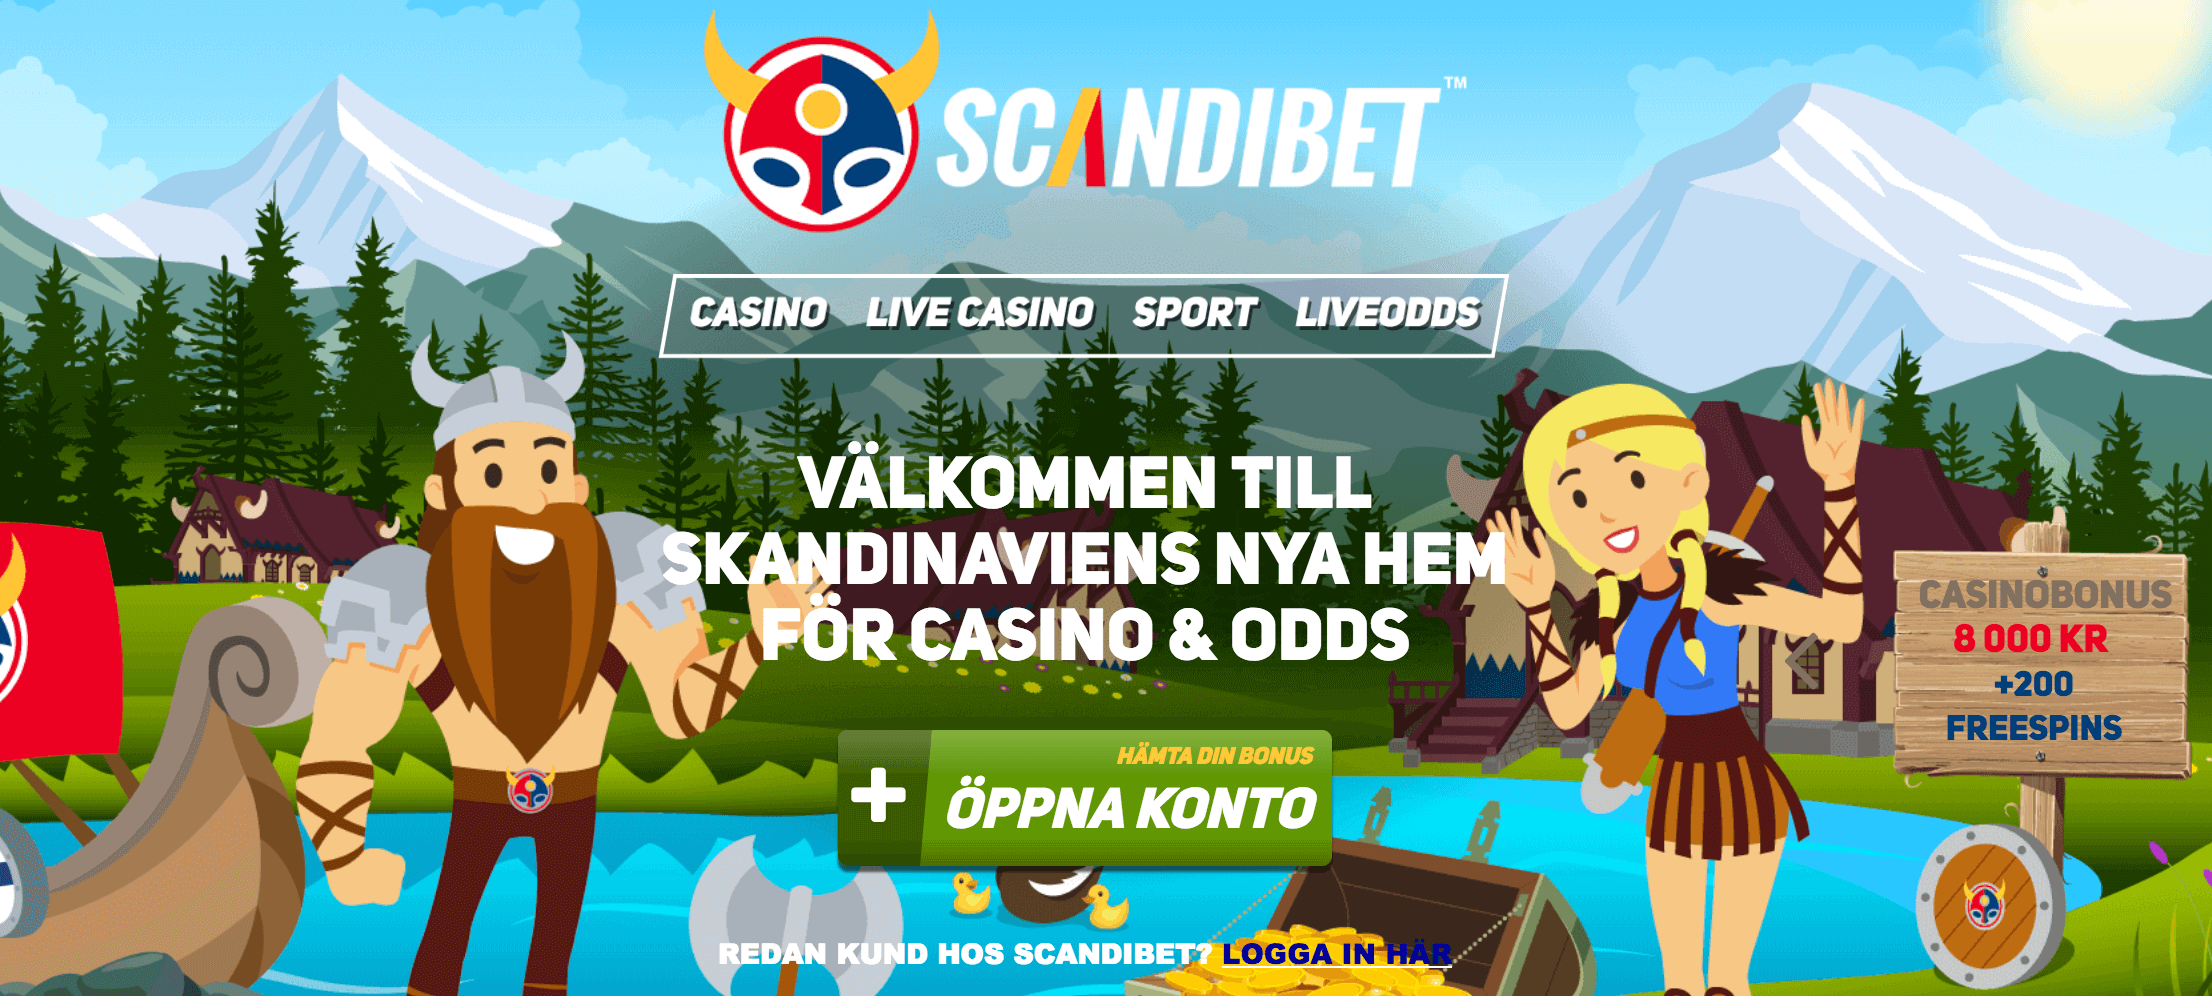 Norska casino nordiskt - 80866